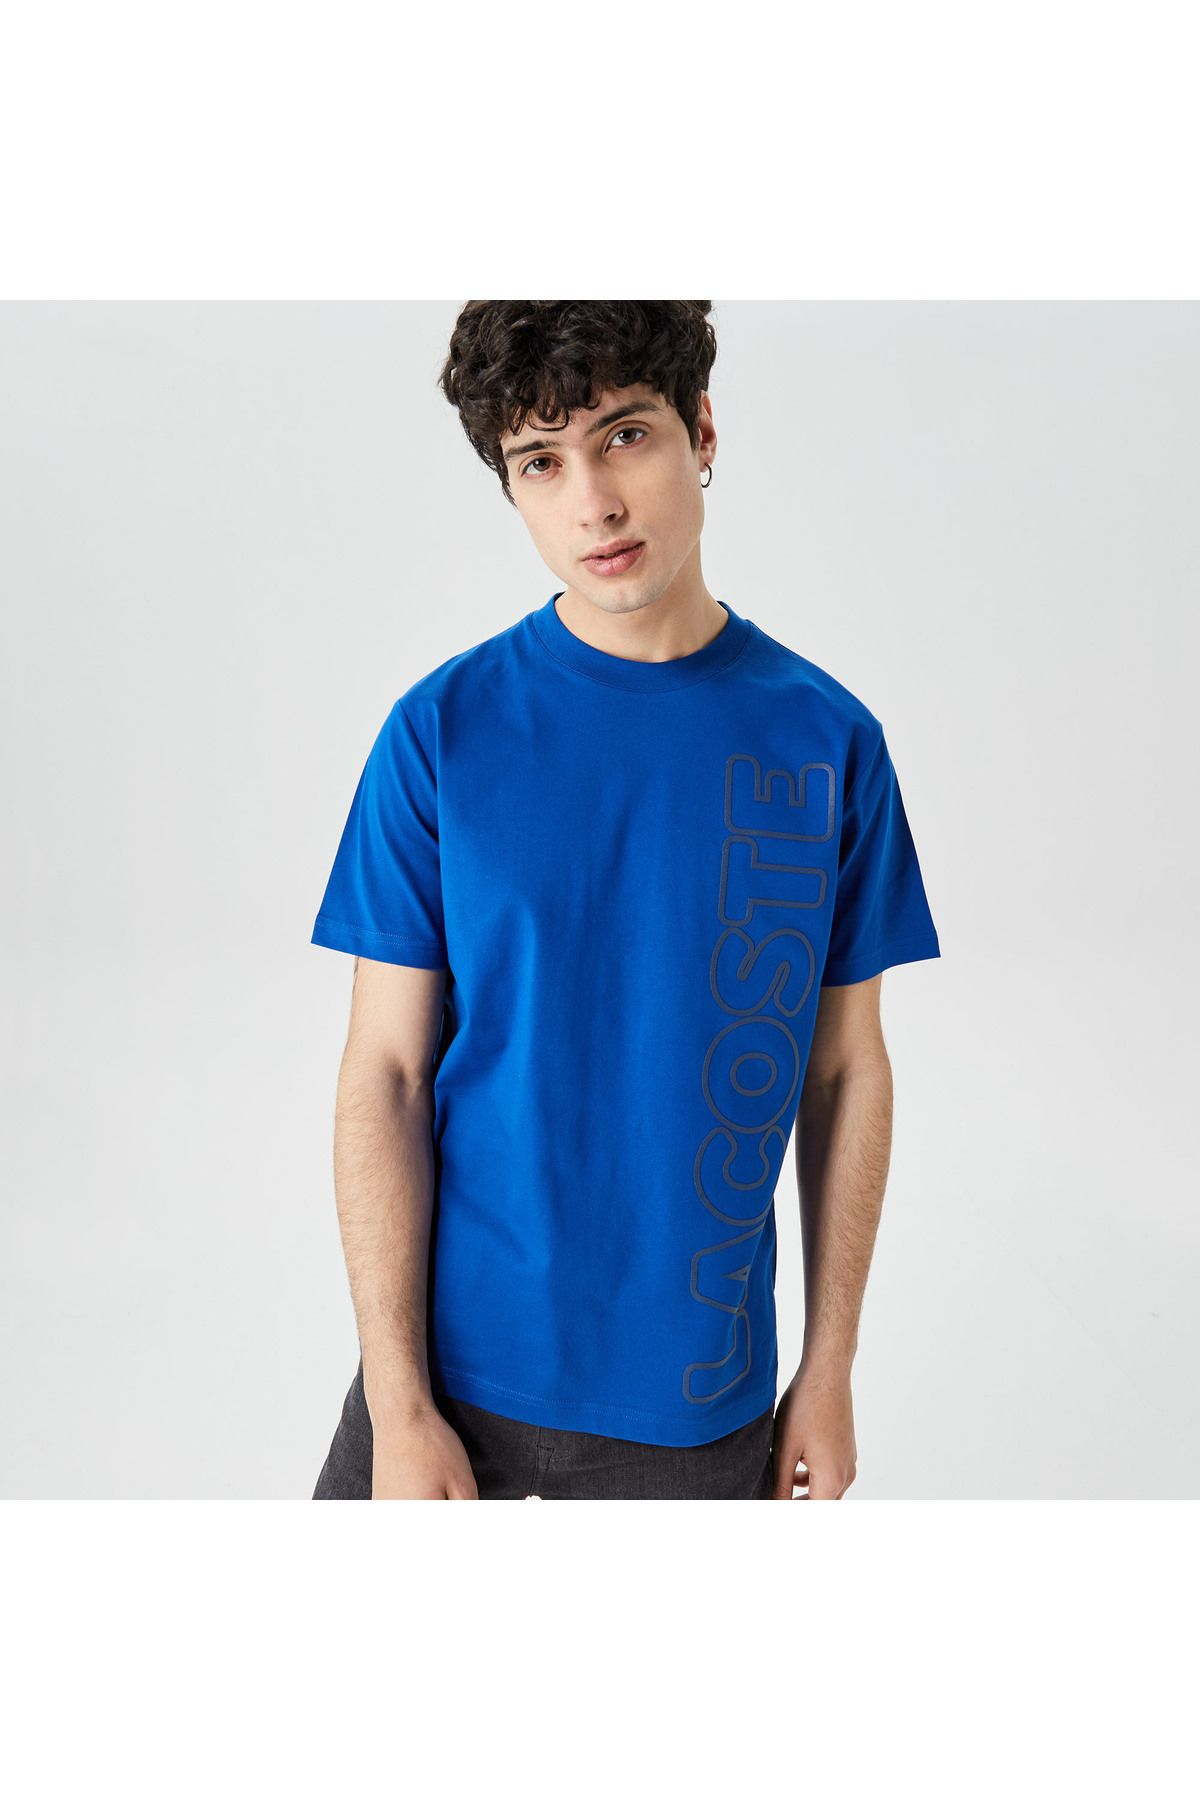 Lacoste Core Erkek Mavi T-shirt